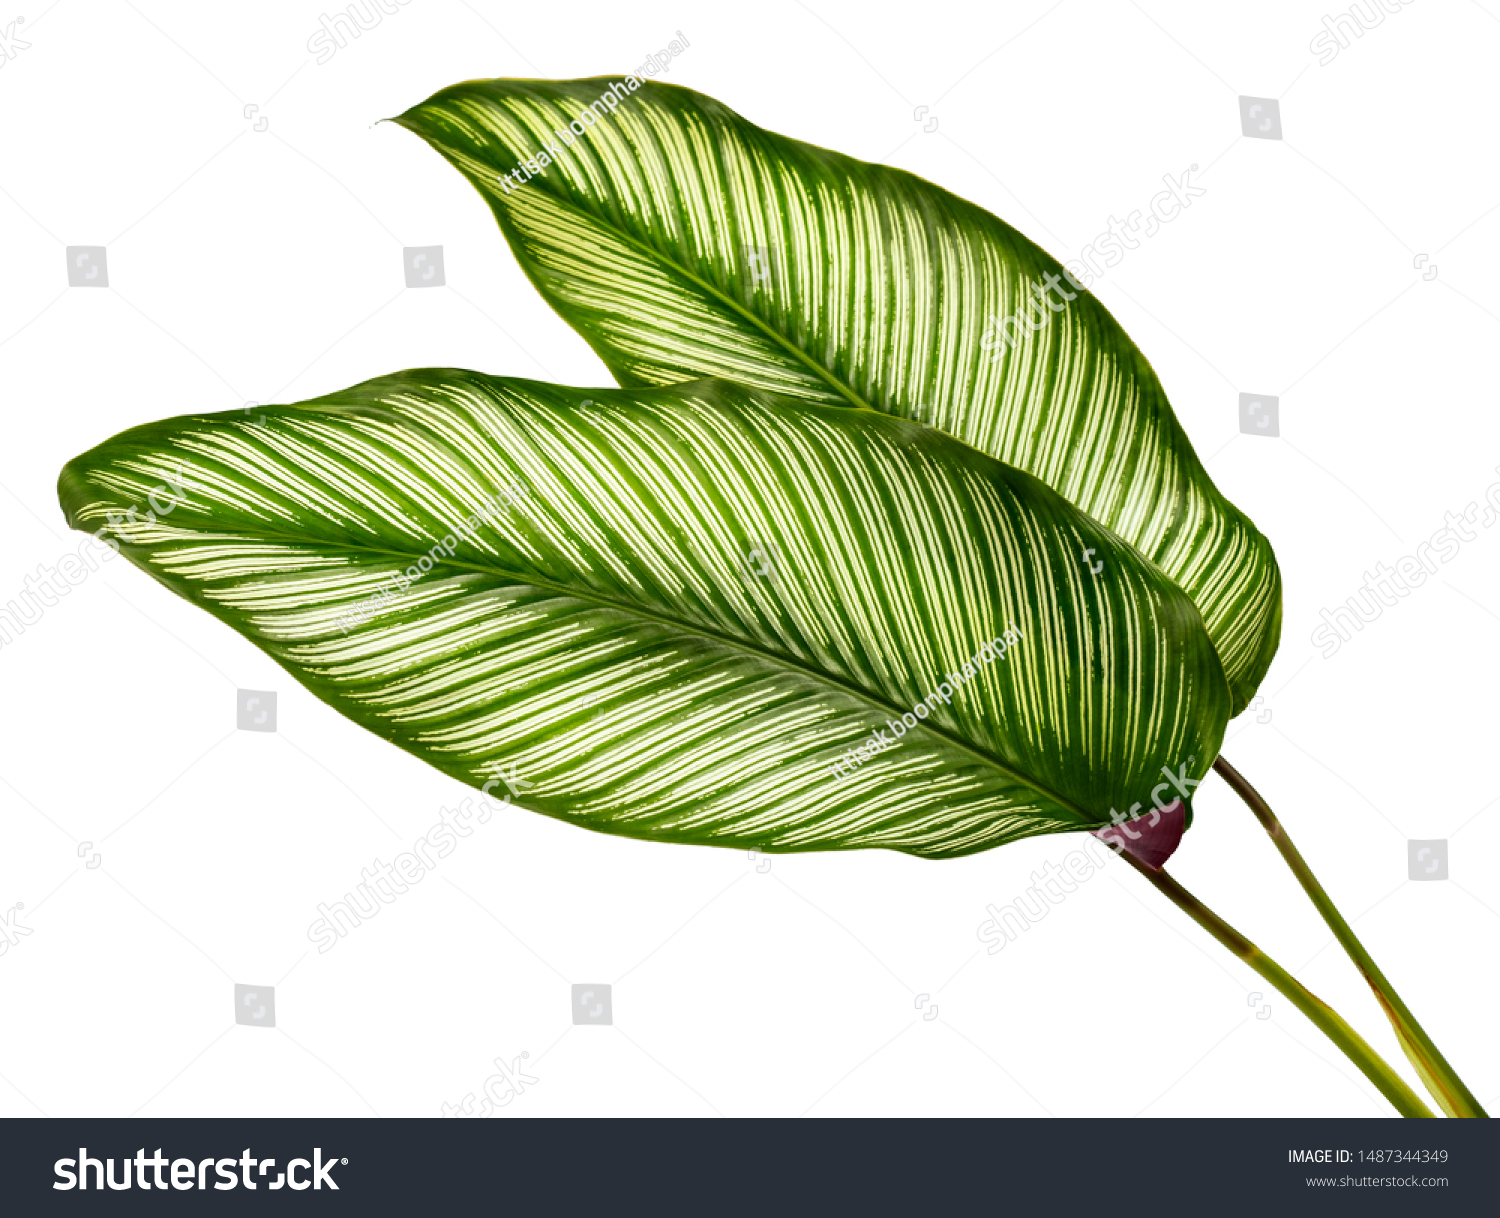 Calathea ornata leaves(Pin-stripe Calathea),Tropical foliage isolated on white background. #1487344349